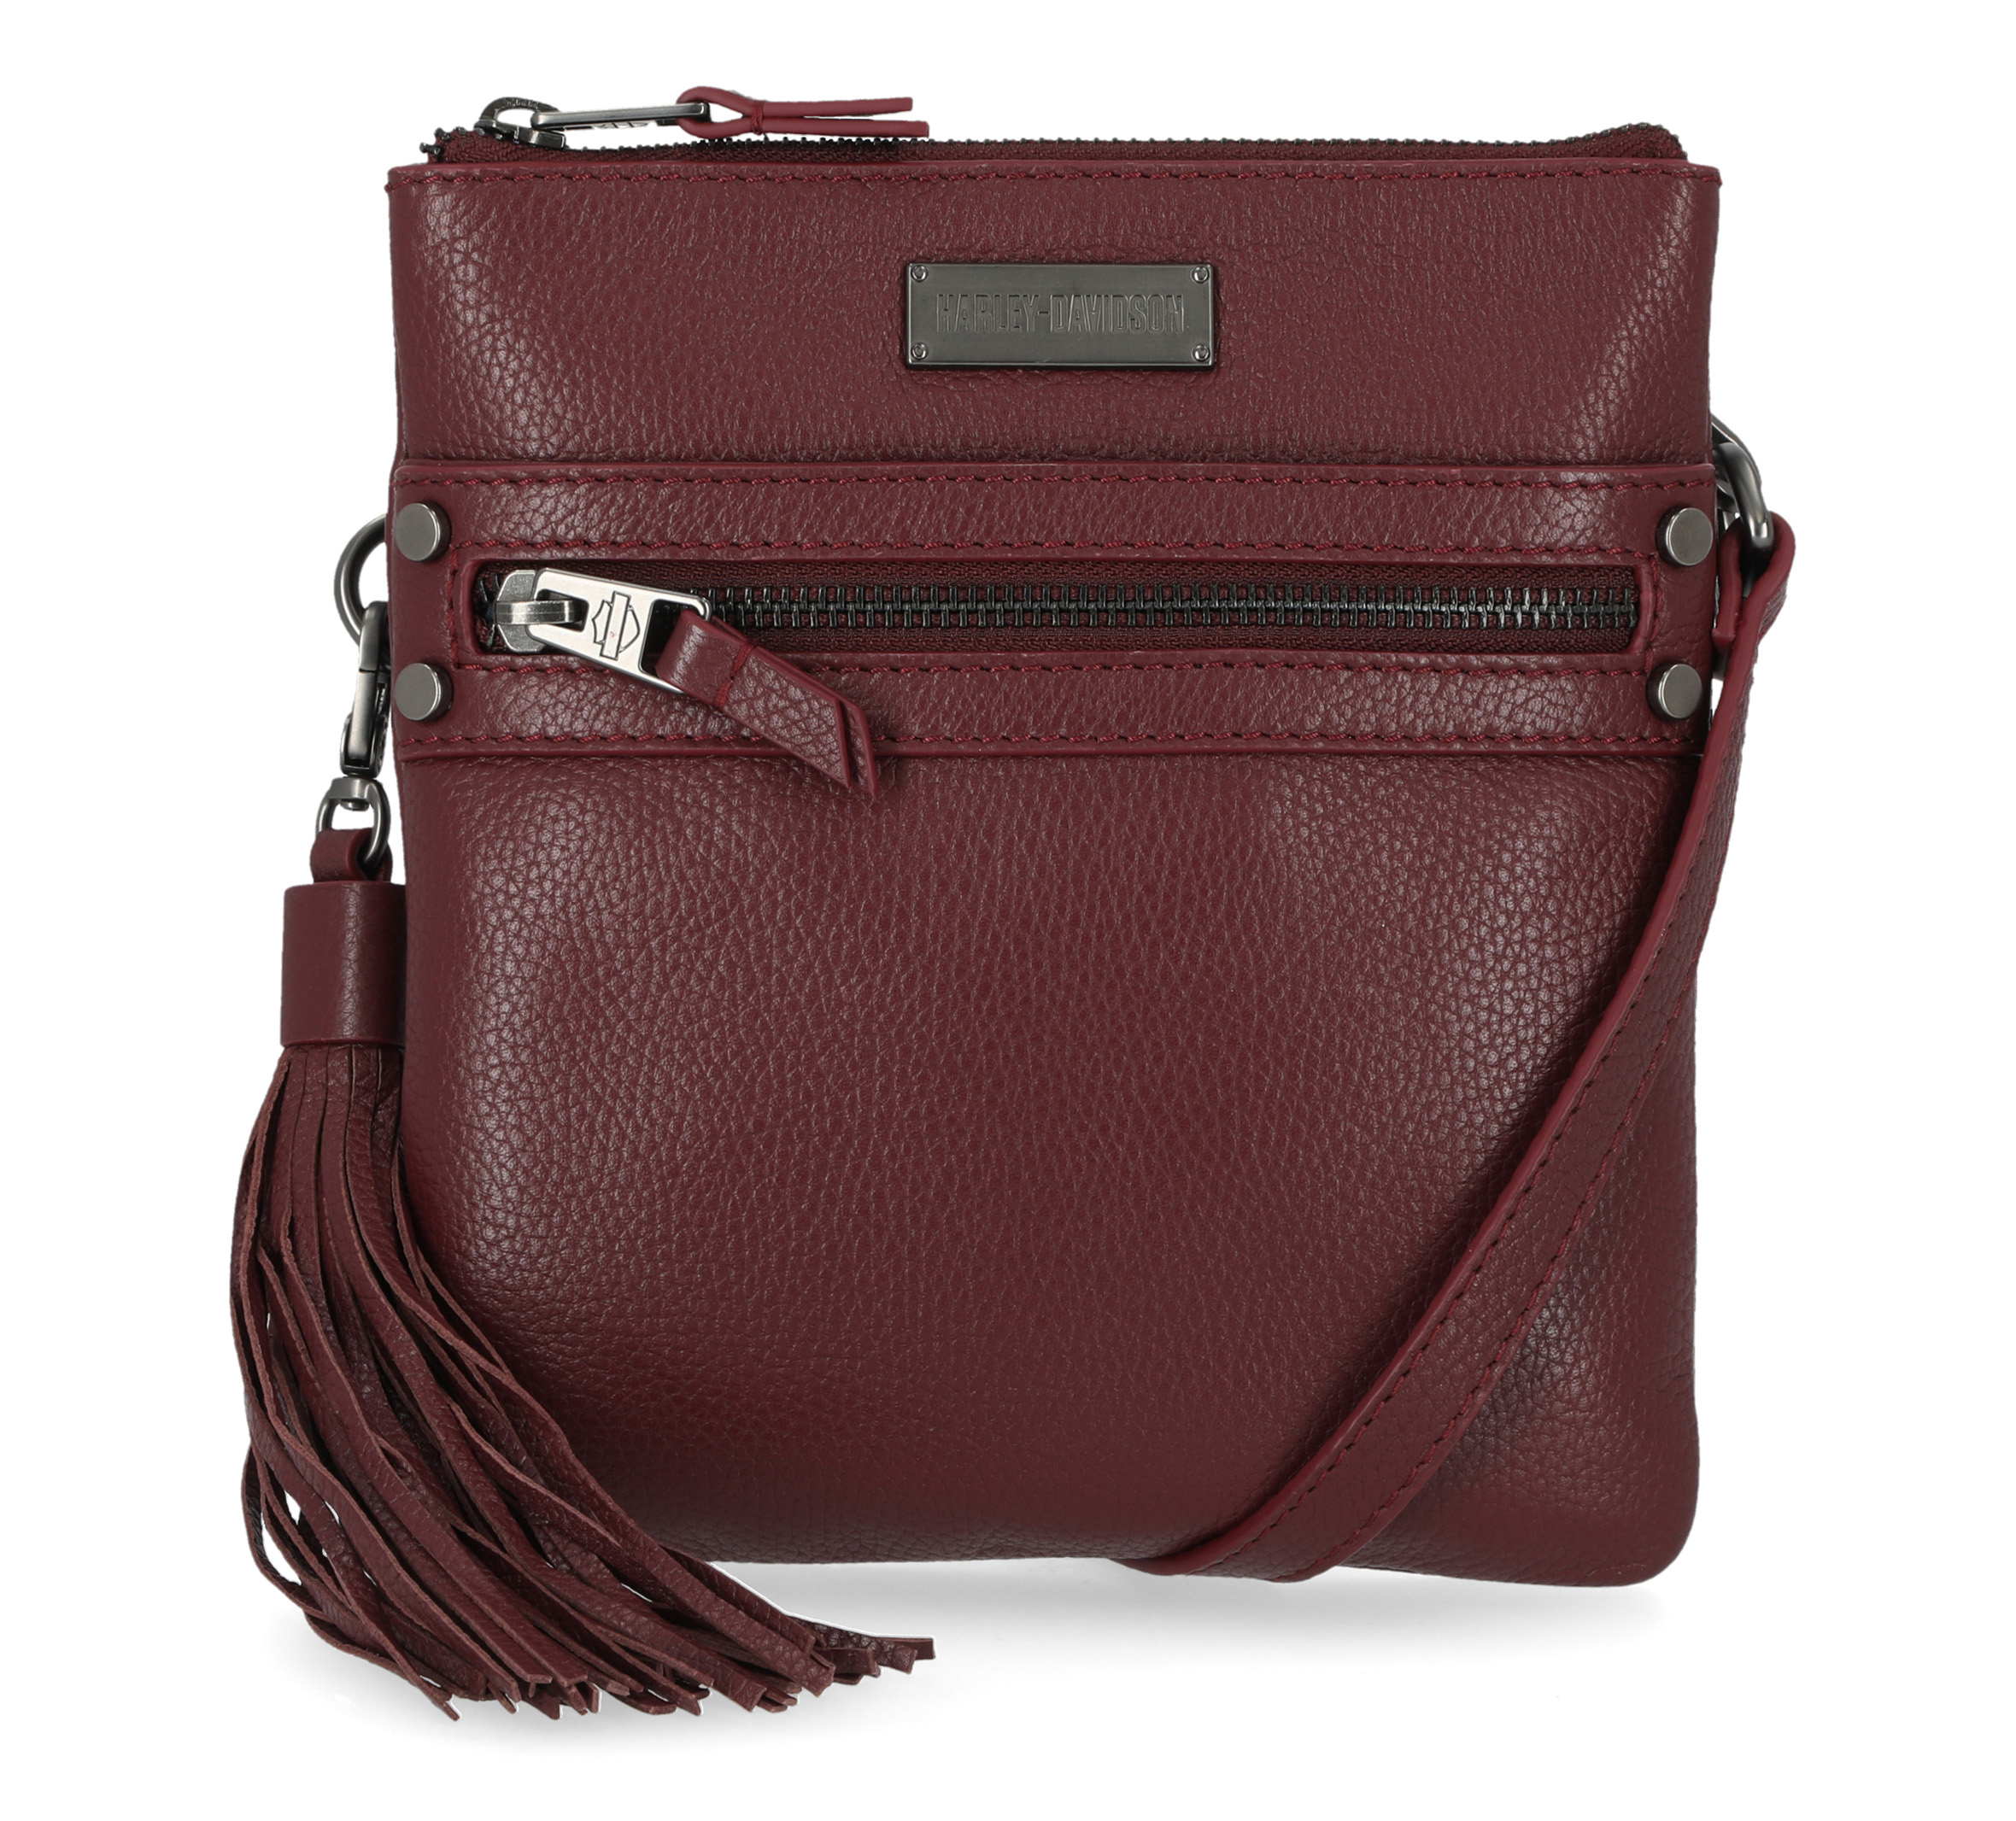 Handbags & Purses for Women | Nordstrom Rack